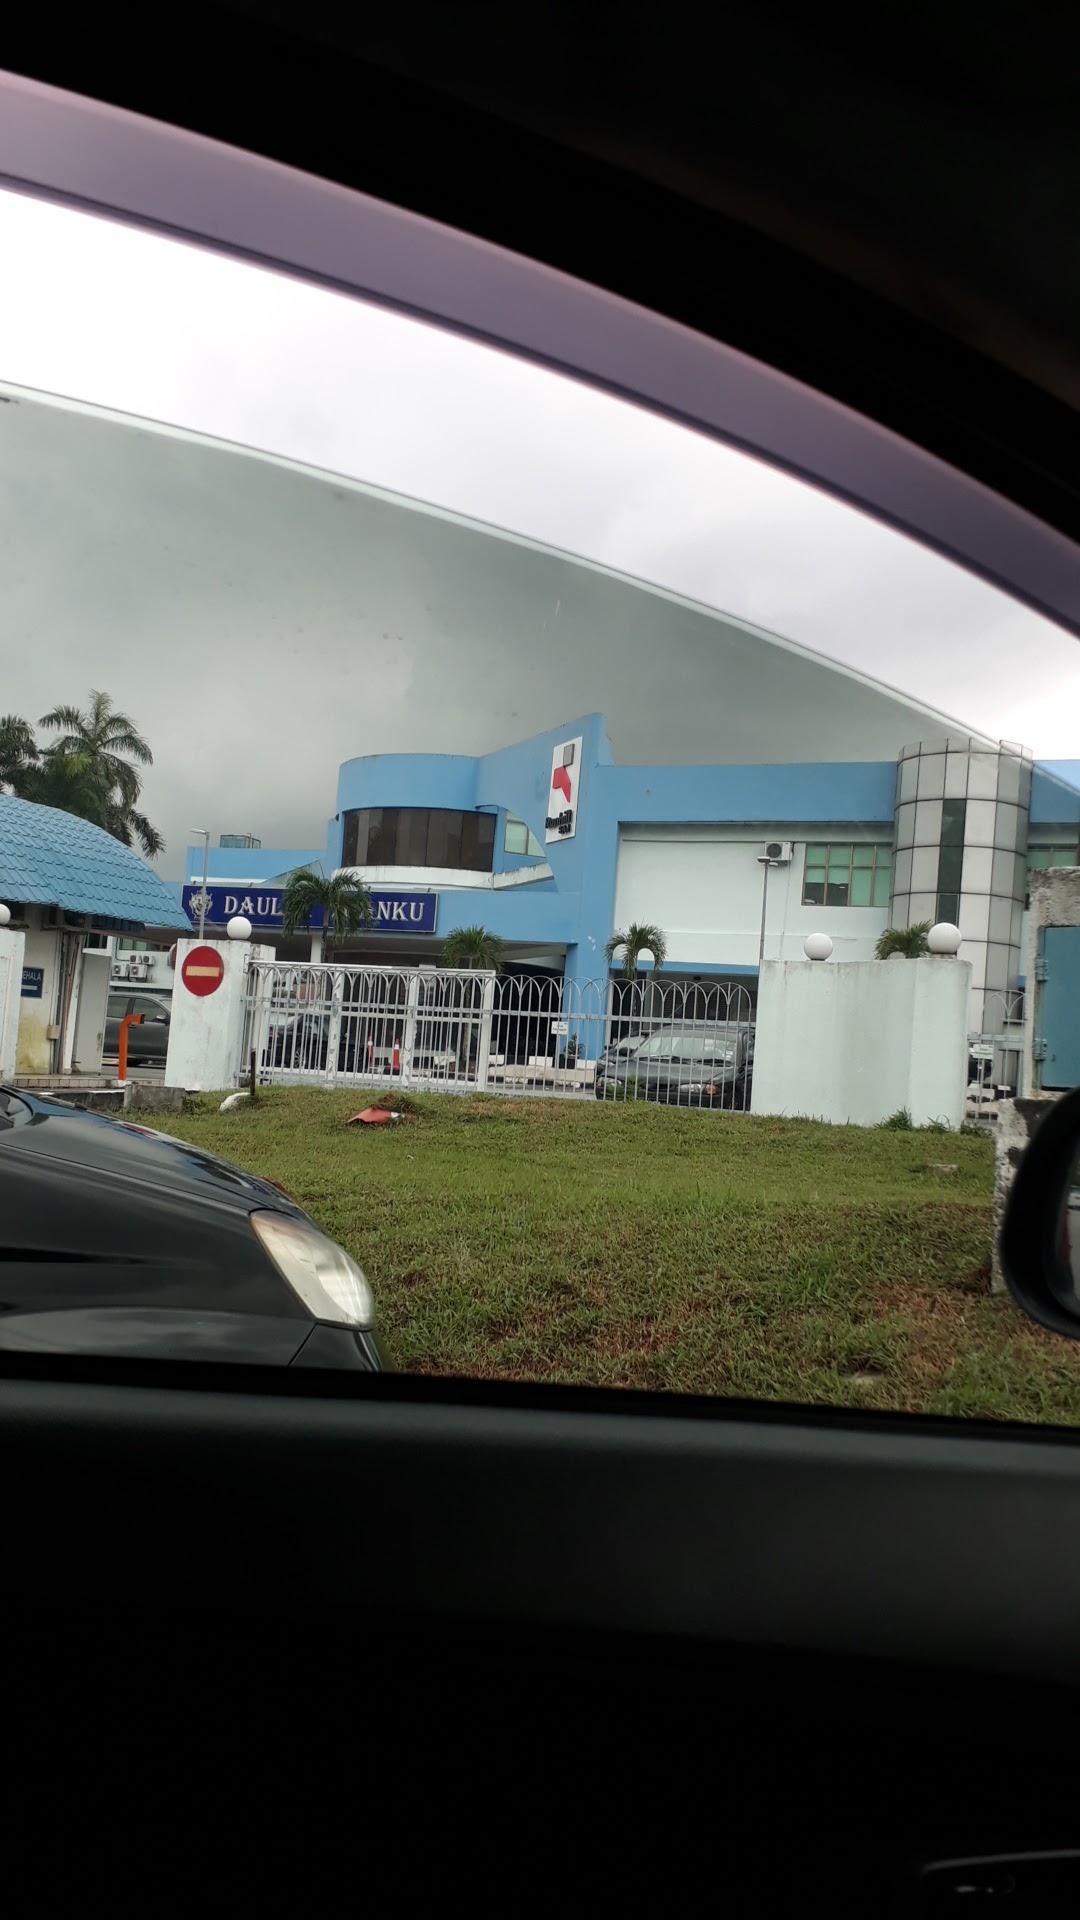 Atm - Bank Islam Syarikat Air Johor Holding